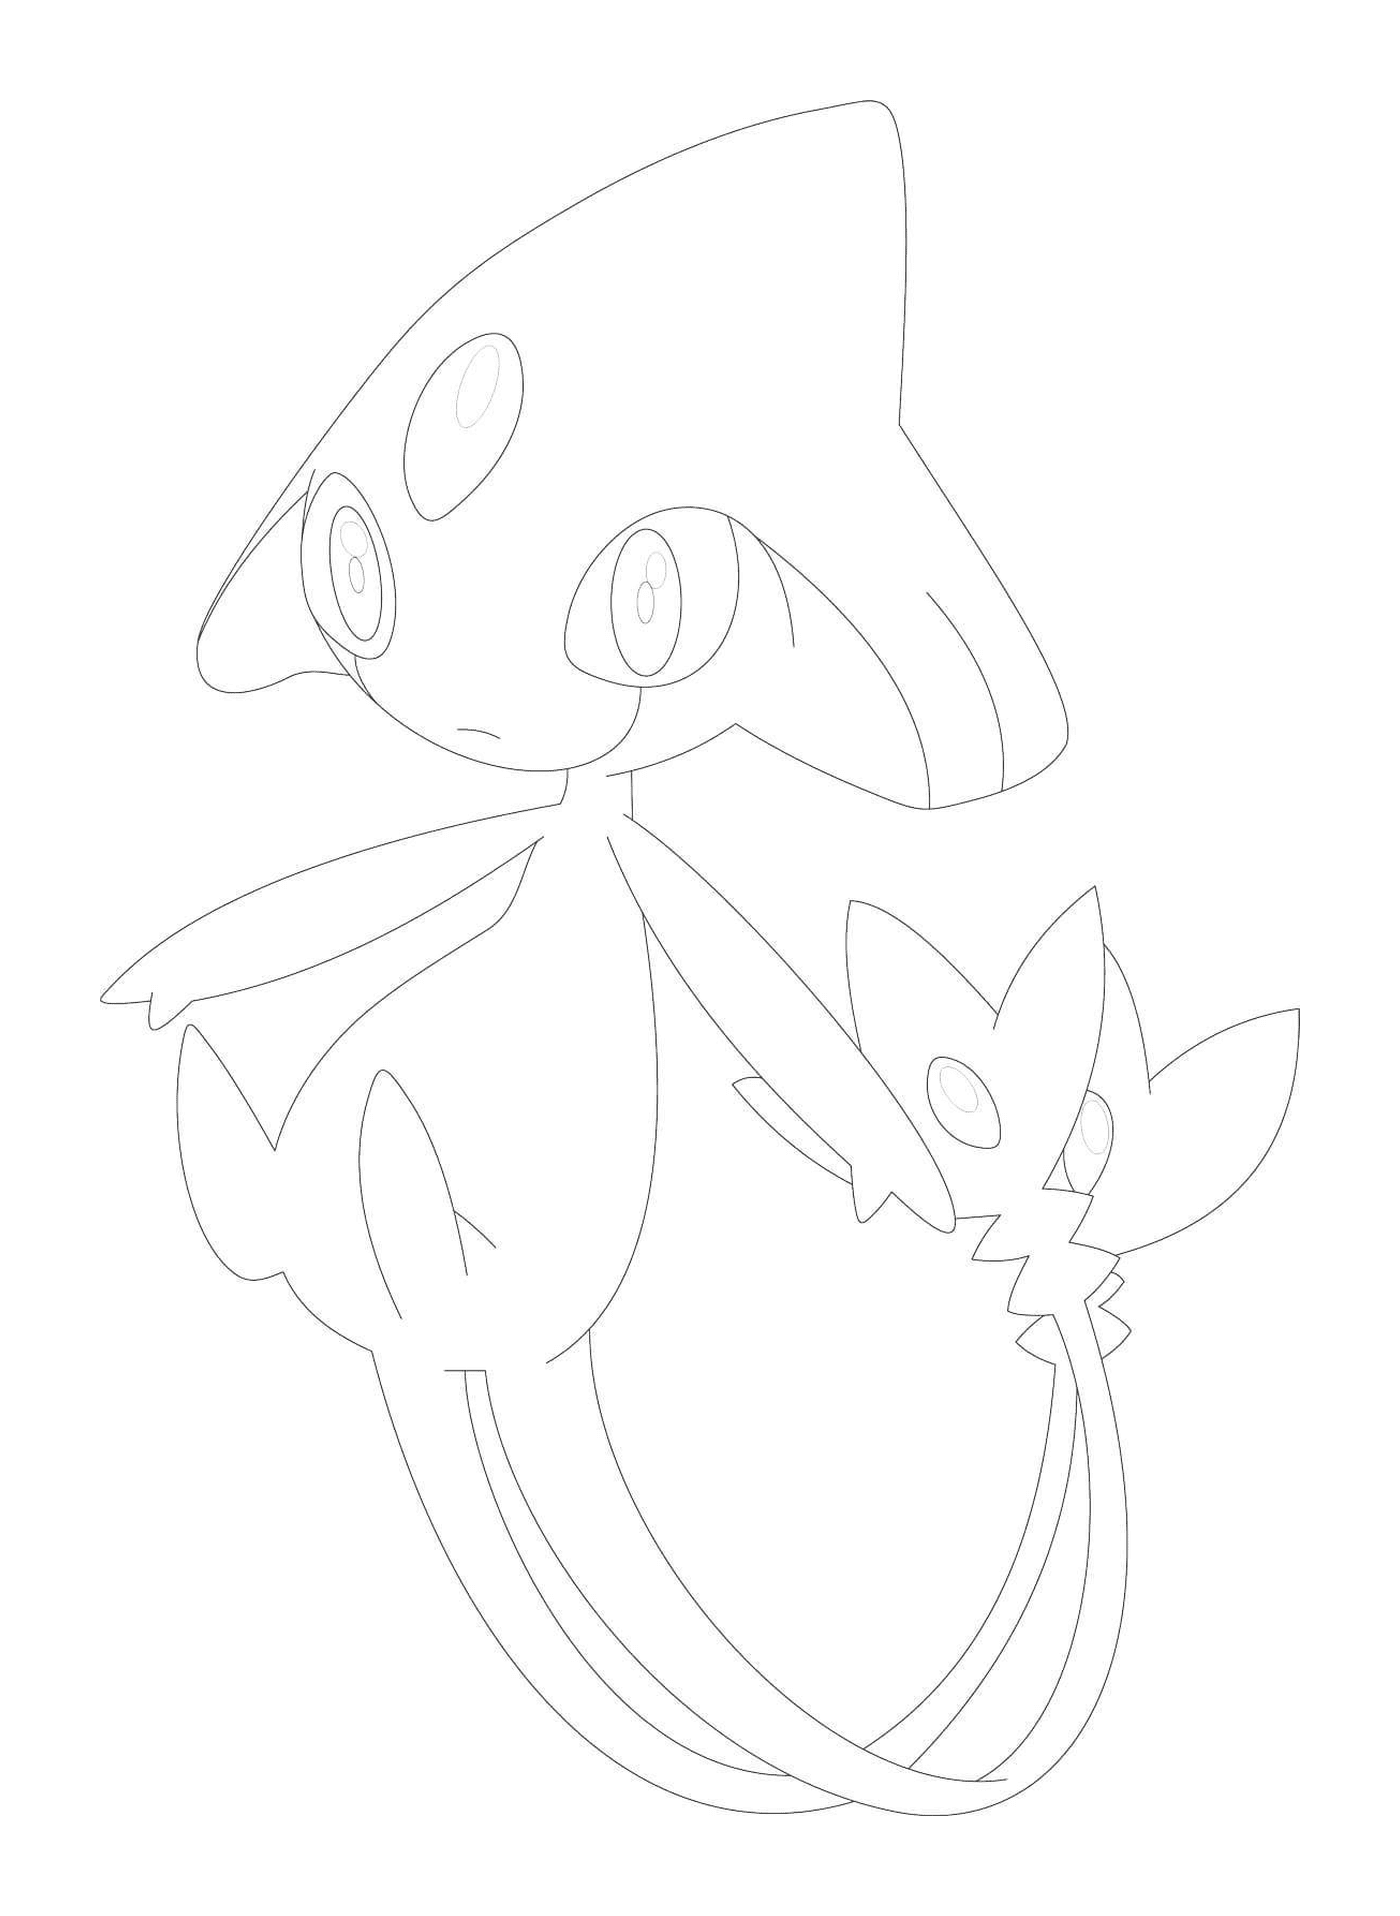  Pokémon Céfadet drawn 